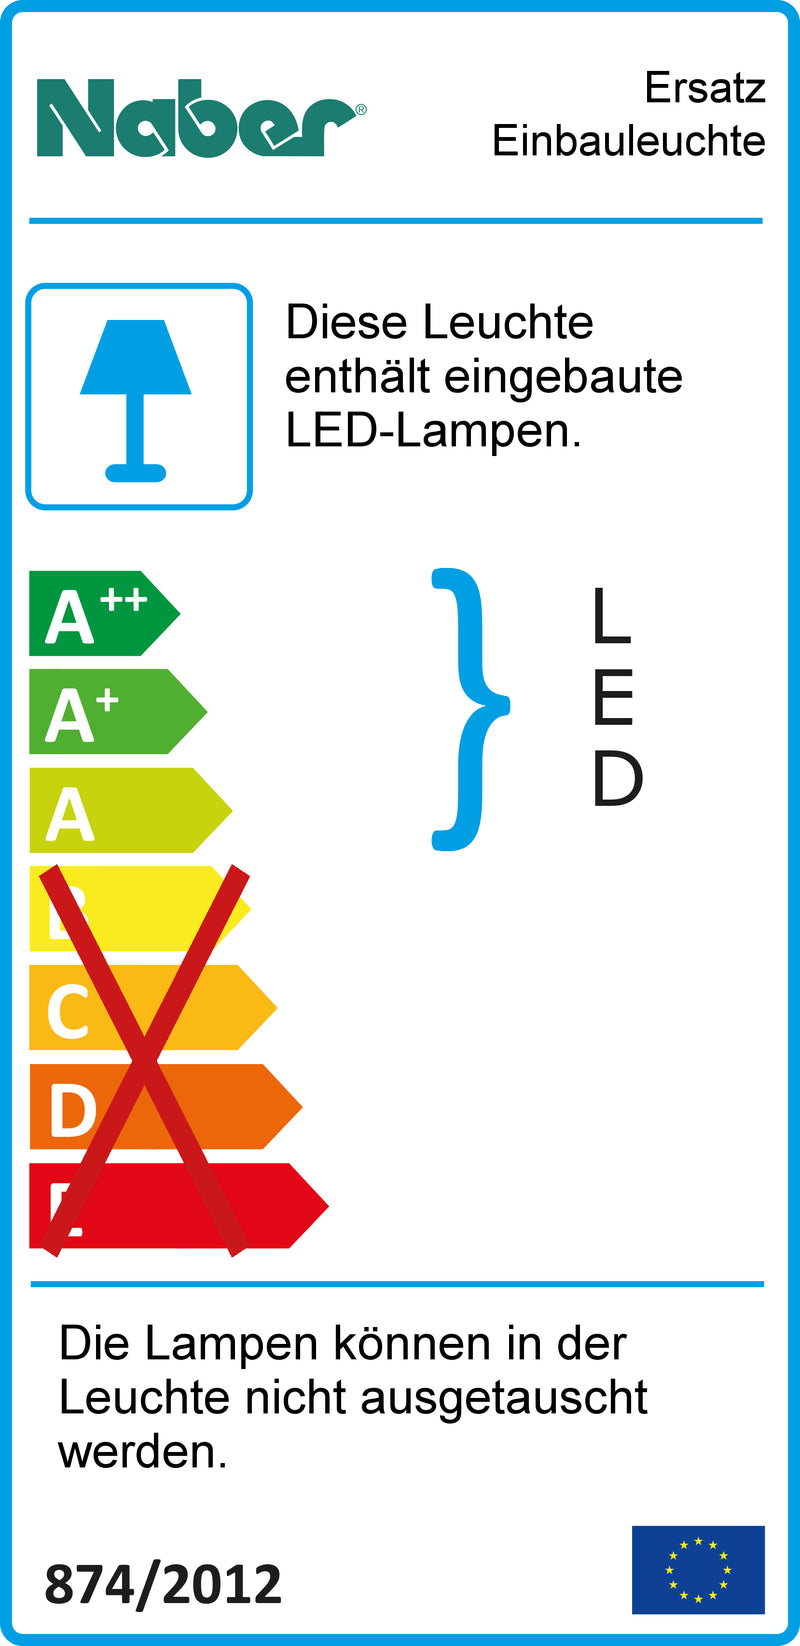 E-Label zu Ersatz Einbauleuchte als Variante 4000 K neutralweiß von Naber GmbH in der Kategorie Lichttechnik in Österreich auf conceptshop.at